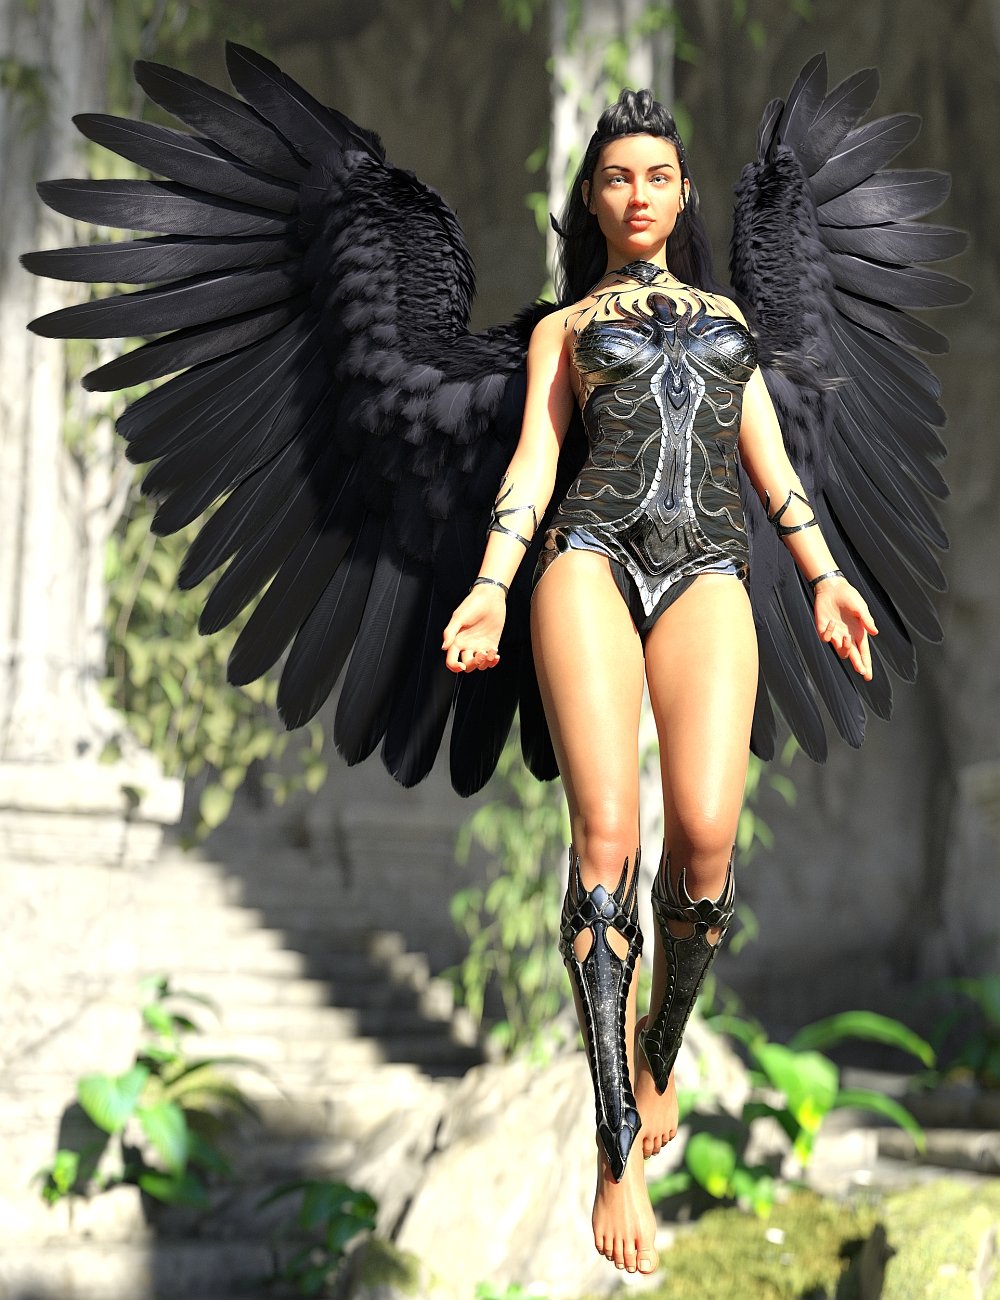 Crow's Wings by: Arki, 3D Models by Daz 3D